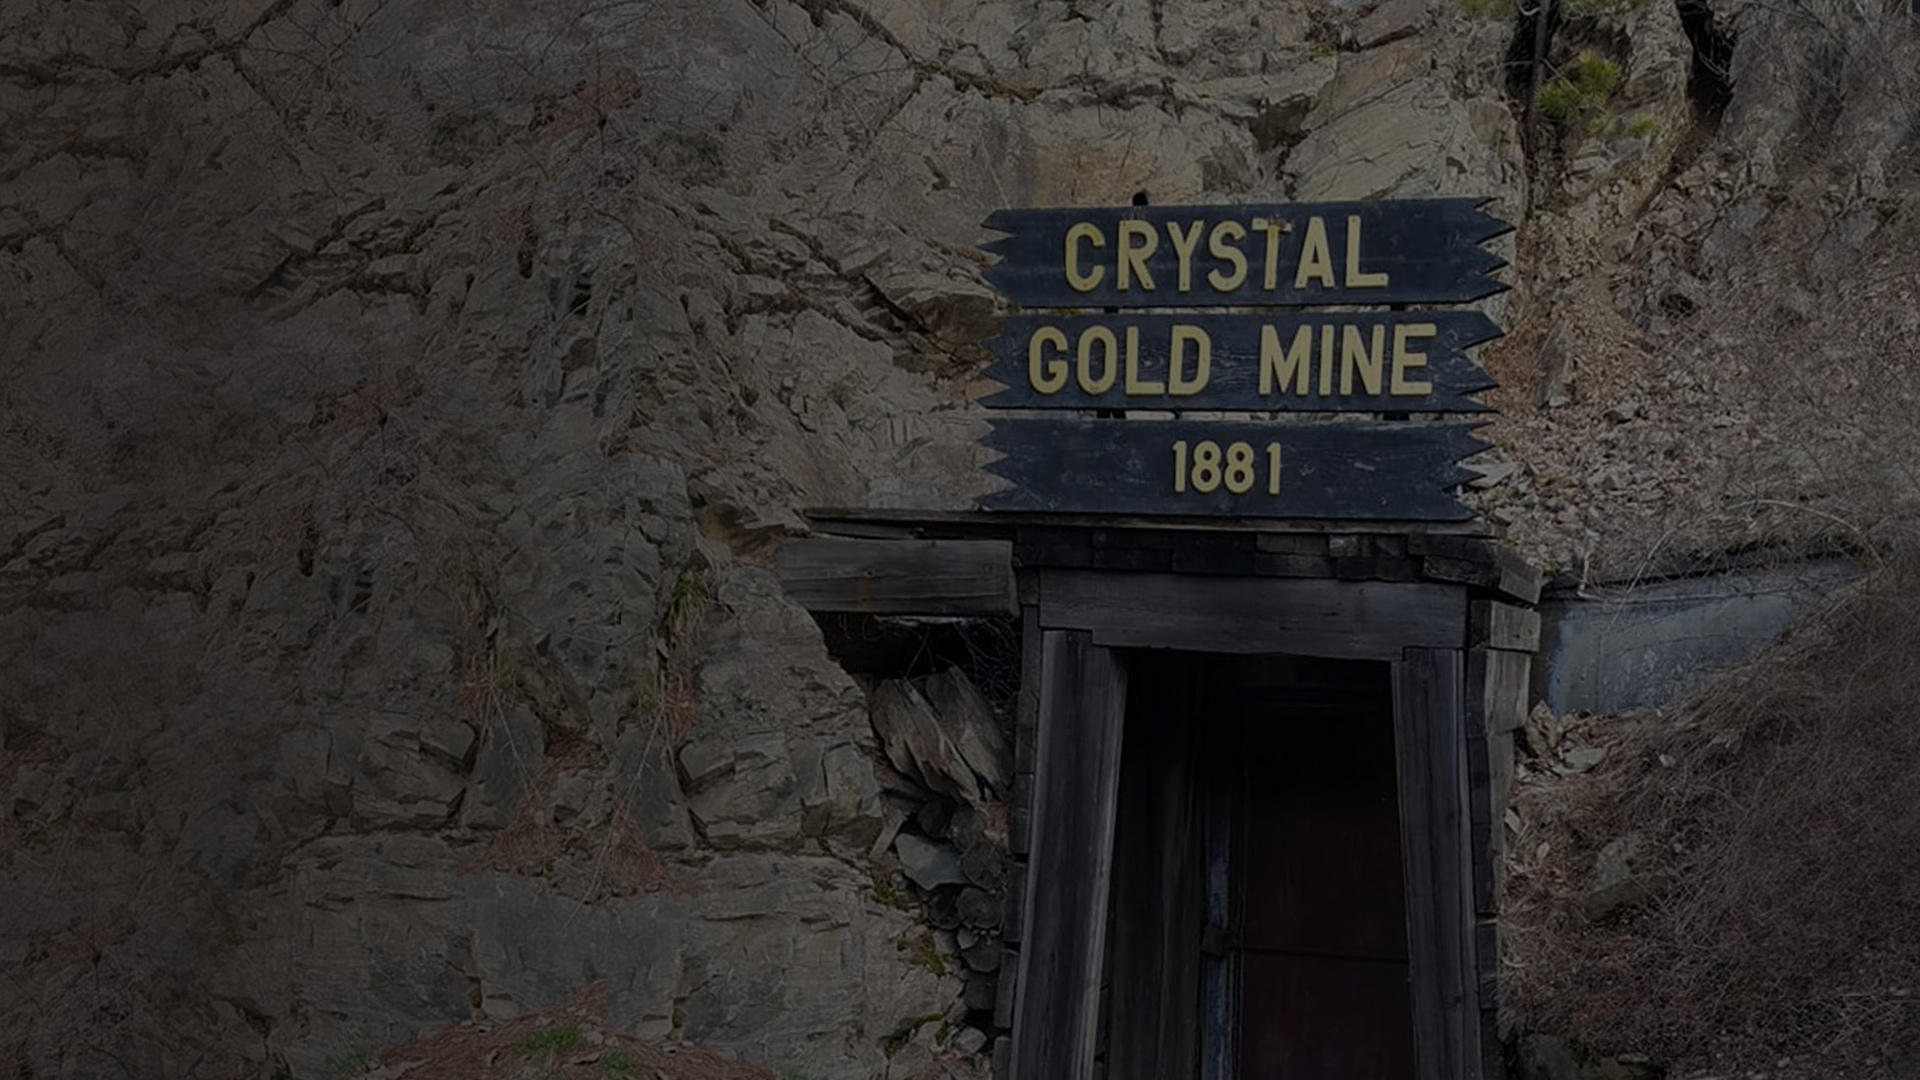 Crystal Gold Mine - Mine Tours - Famous Mines - Fantastic Mine - Mine Exploration - Mine Sightseeing